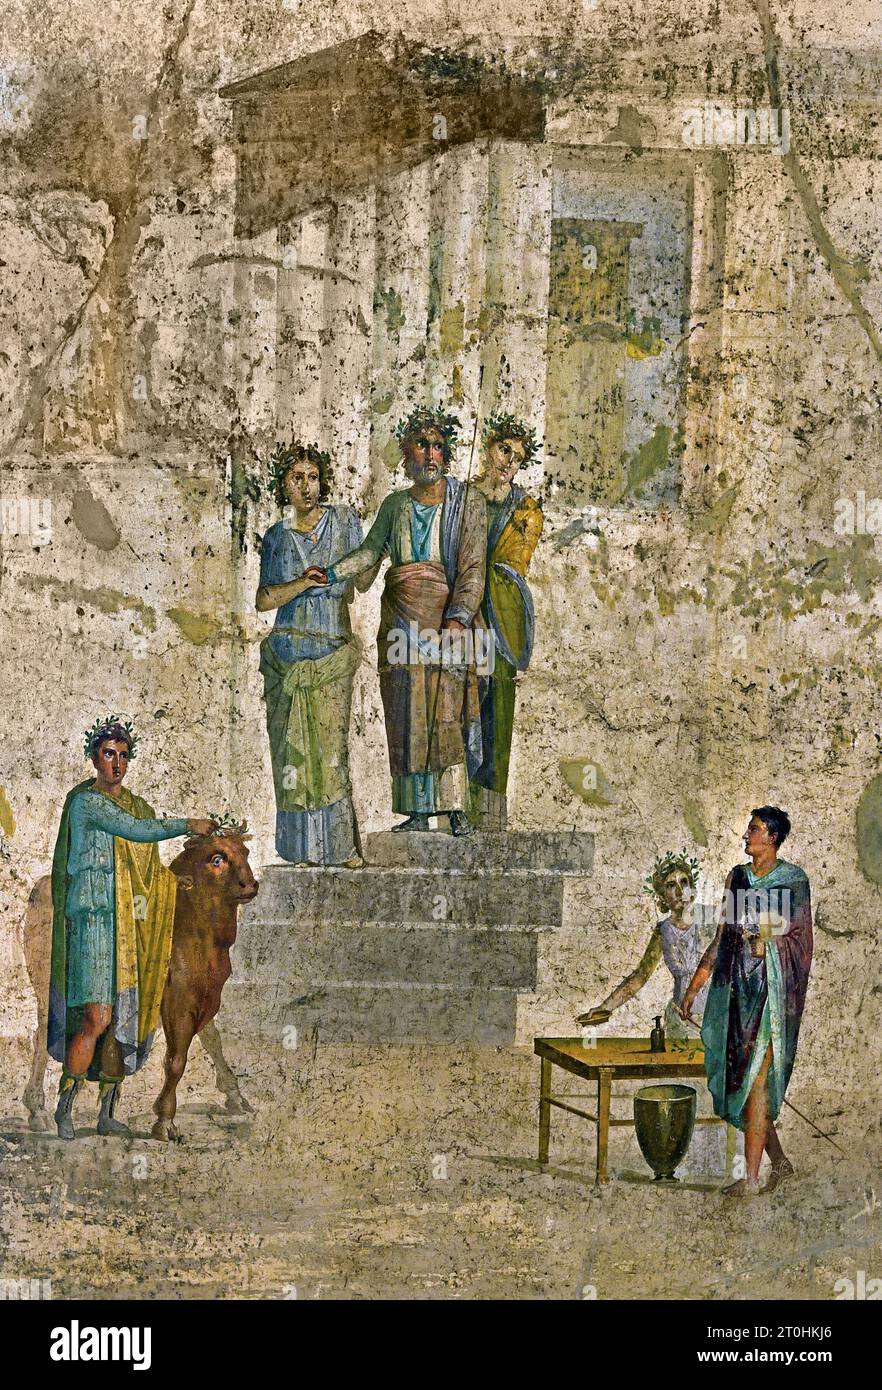 Begegnung zwischen Pelias und Jason. Pelias, König von Iolcos, steht auf den Stufen eines Tempels und erkennt Jason an seiner fehlenden Sandale. Die römische Stadt Fresco Pompeji befindet sich in der Nähe von Neapel in der Region Kampanien in Italien. Pompeji wurde bei der Eruption des Vesuvs 79 n. Chr. unter 4-6 m vulkanischer Asche und Bimsstein begraben. Italien Stockfoto